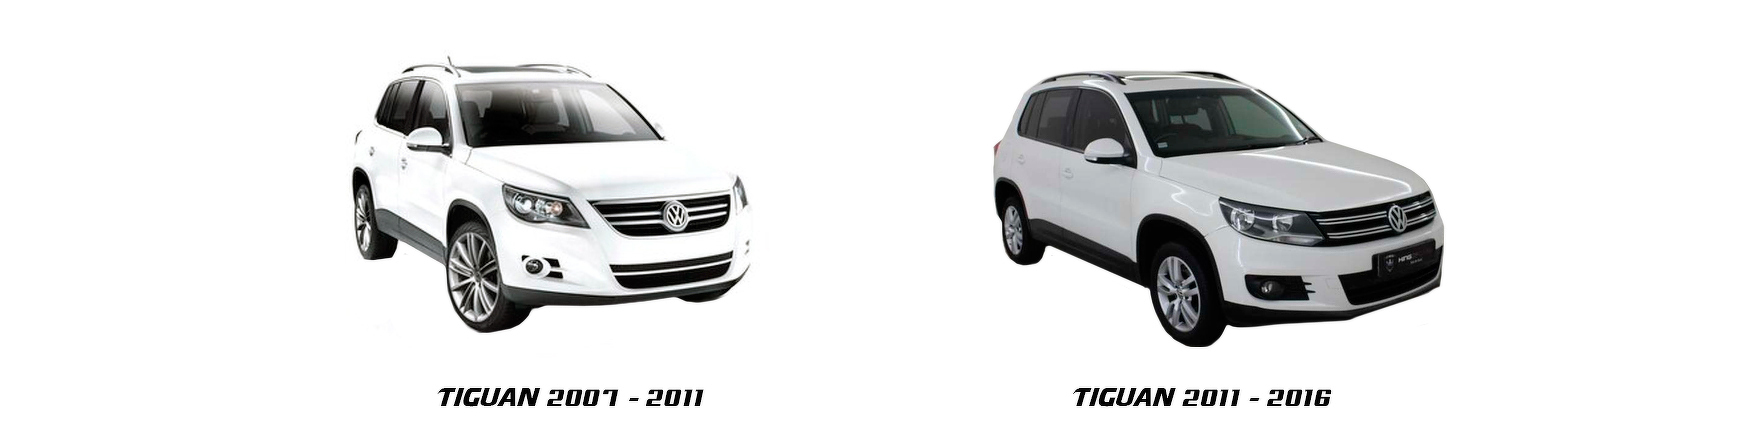 Piezas y Recambios de Volkswagen Tiguan (5N) de 2007 a 2011 | Veramauto.es